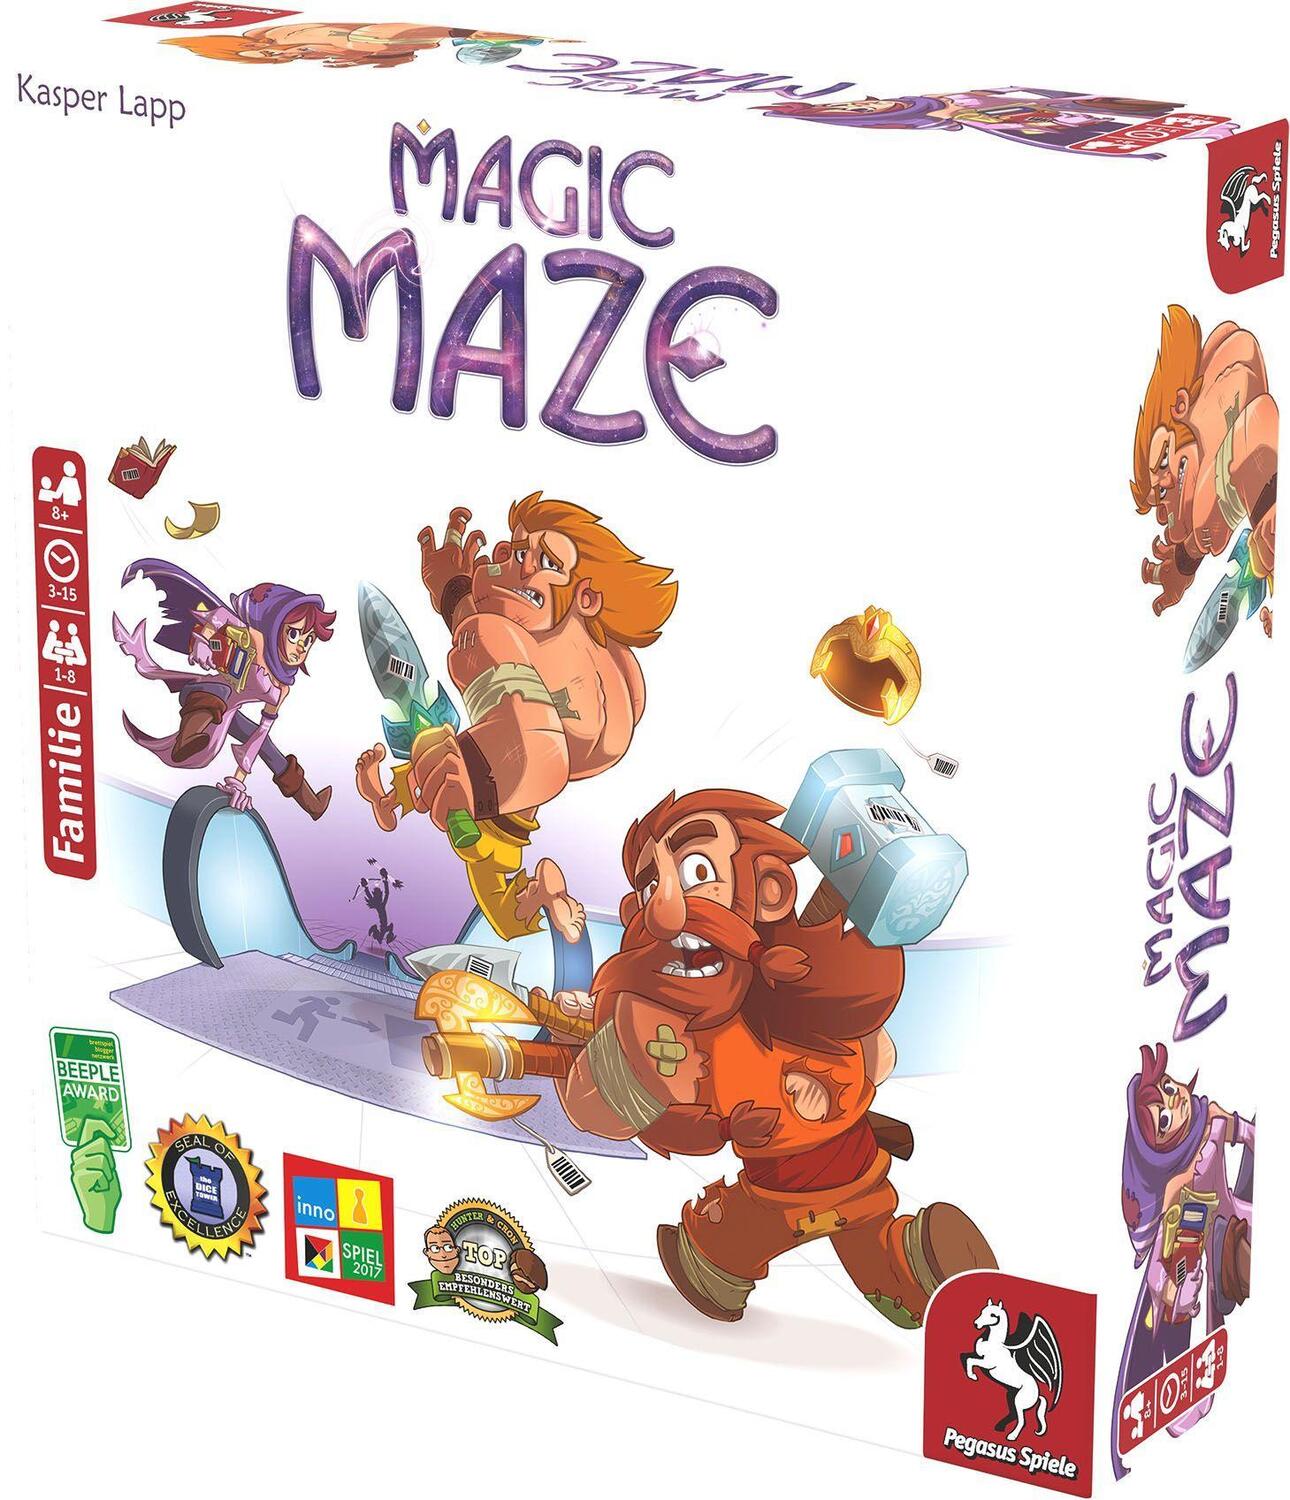 Bild: 4250231714283 | Magic Maze (deutsche Ausgabe) | Spiel | Deutsch | 2017 | Pegasus